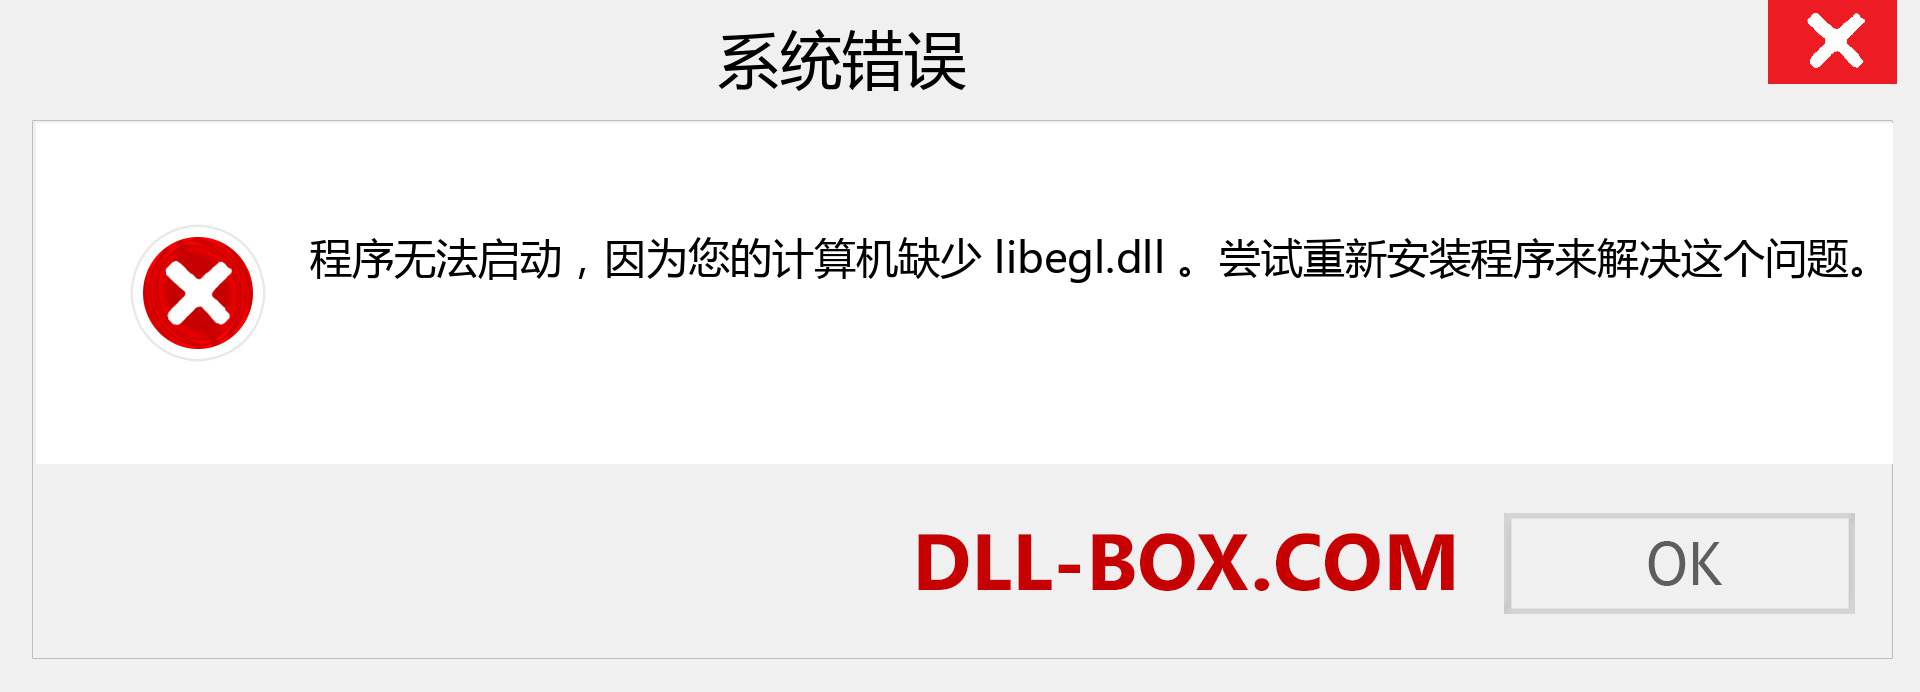 libegl.dll 文件丢失？。 适用于 Windows 7、8、10 的下载 - 修复 Windows、照片、图像上的 libegl dll 丢失错误